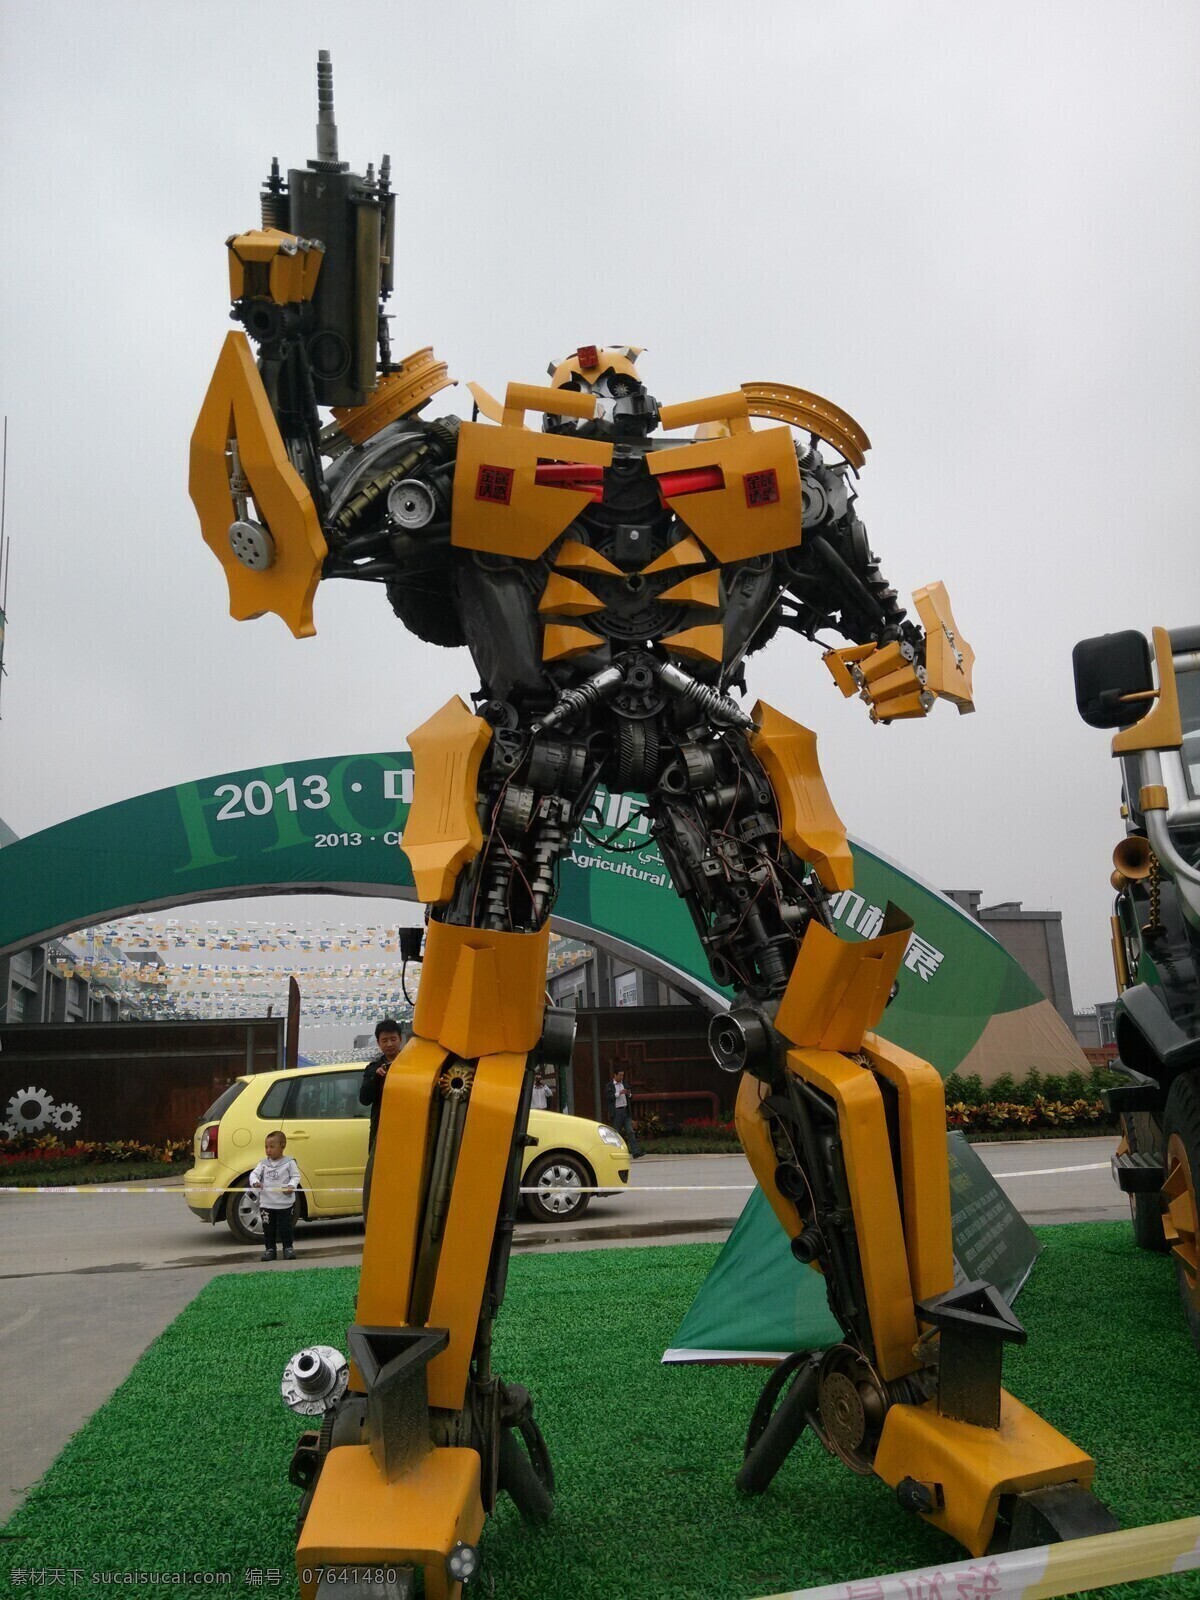 大黄 峰 机器人 大黄蜂 科学研究 现代科技 大黄峰机器人 悍马车 机器人和悍马 站立的大黄蜂 矢量图